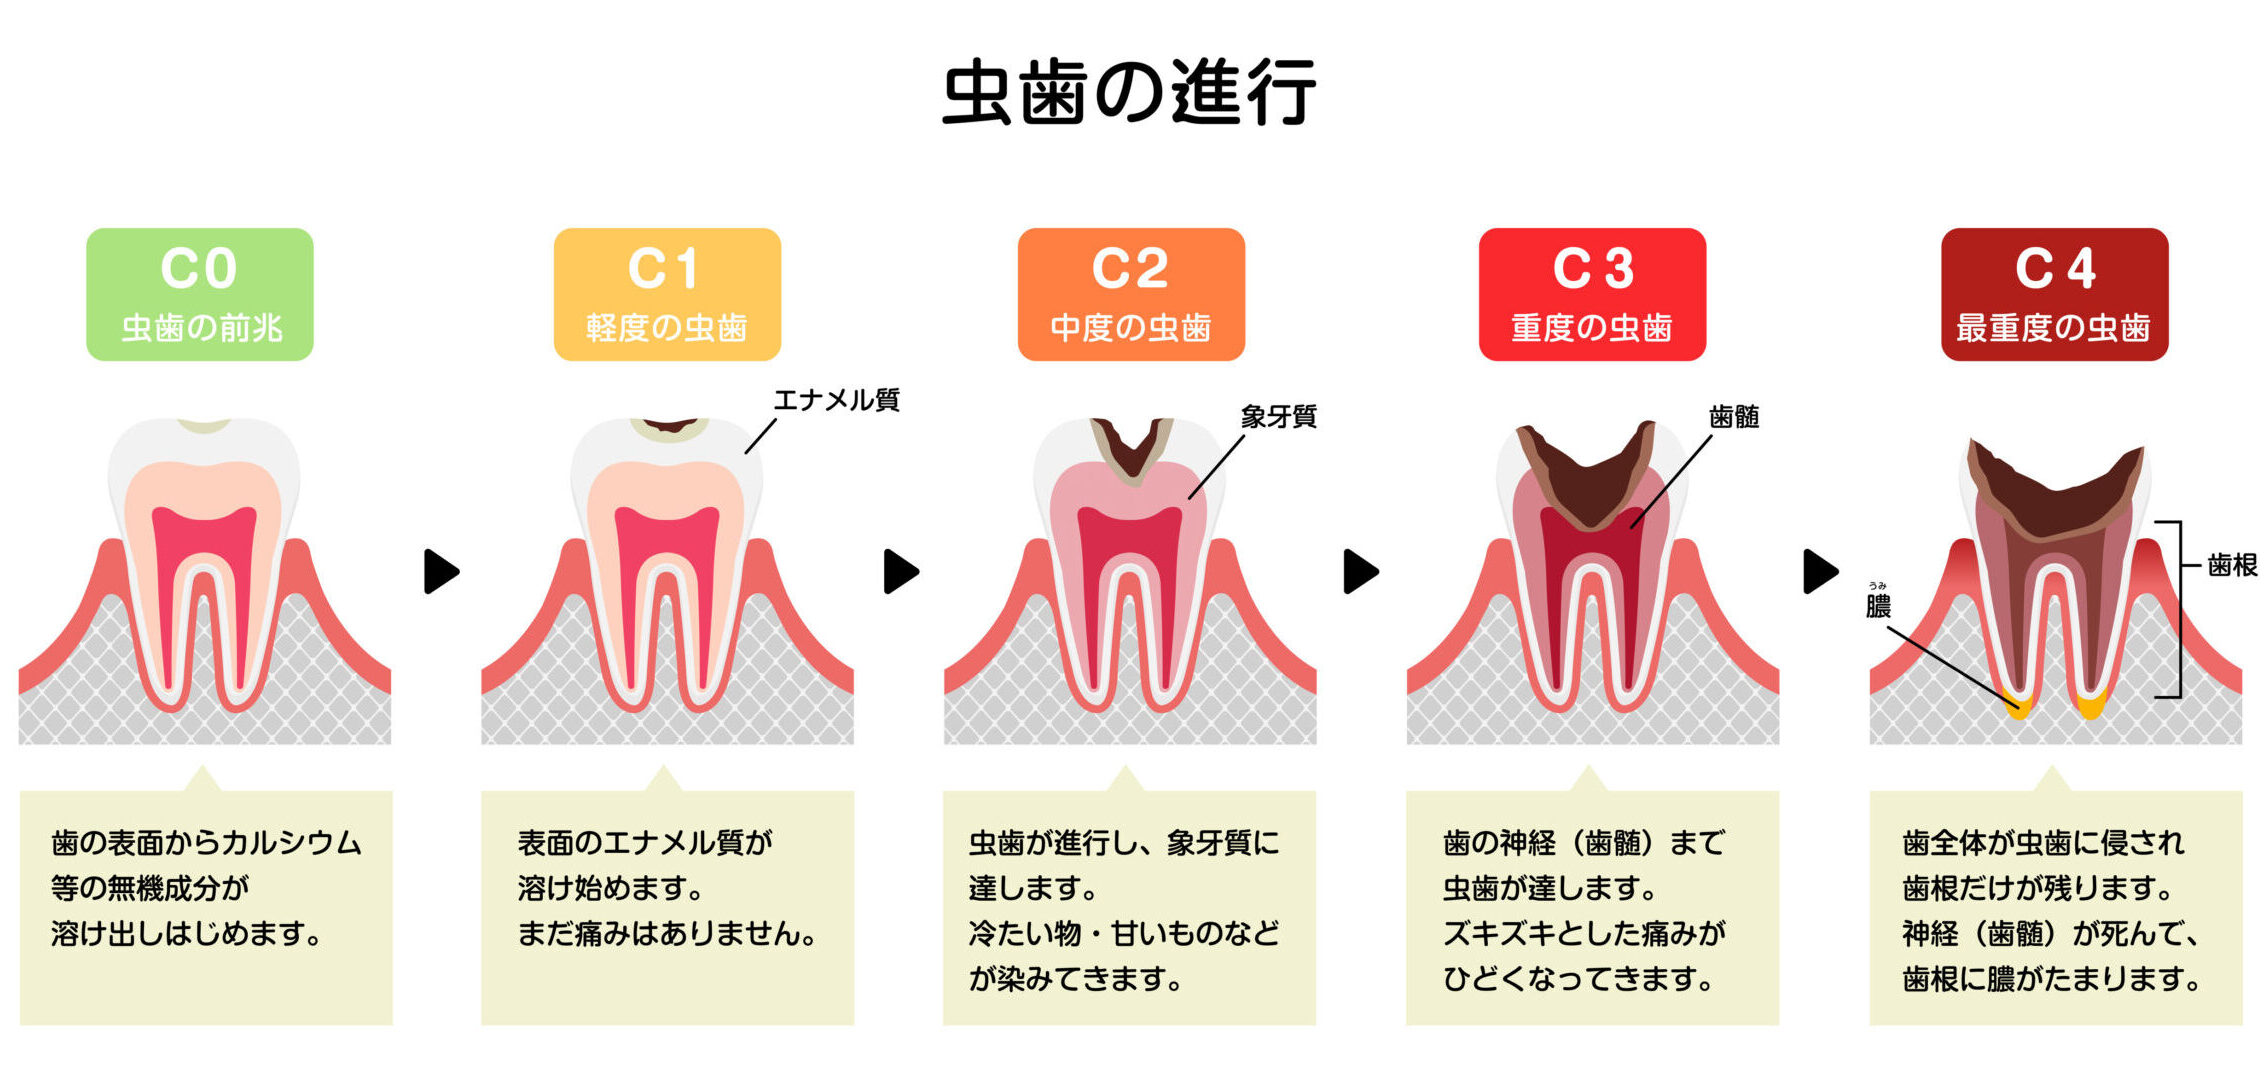 虫歯を確かめる方法（セルフチェック）と虫歯を見つけた時の対策について